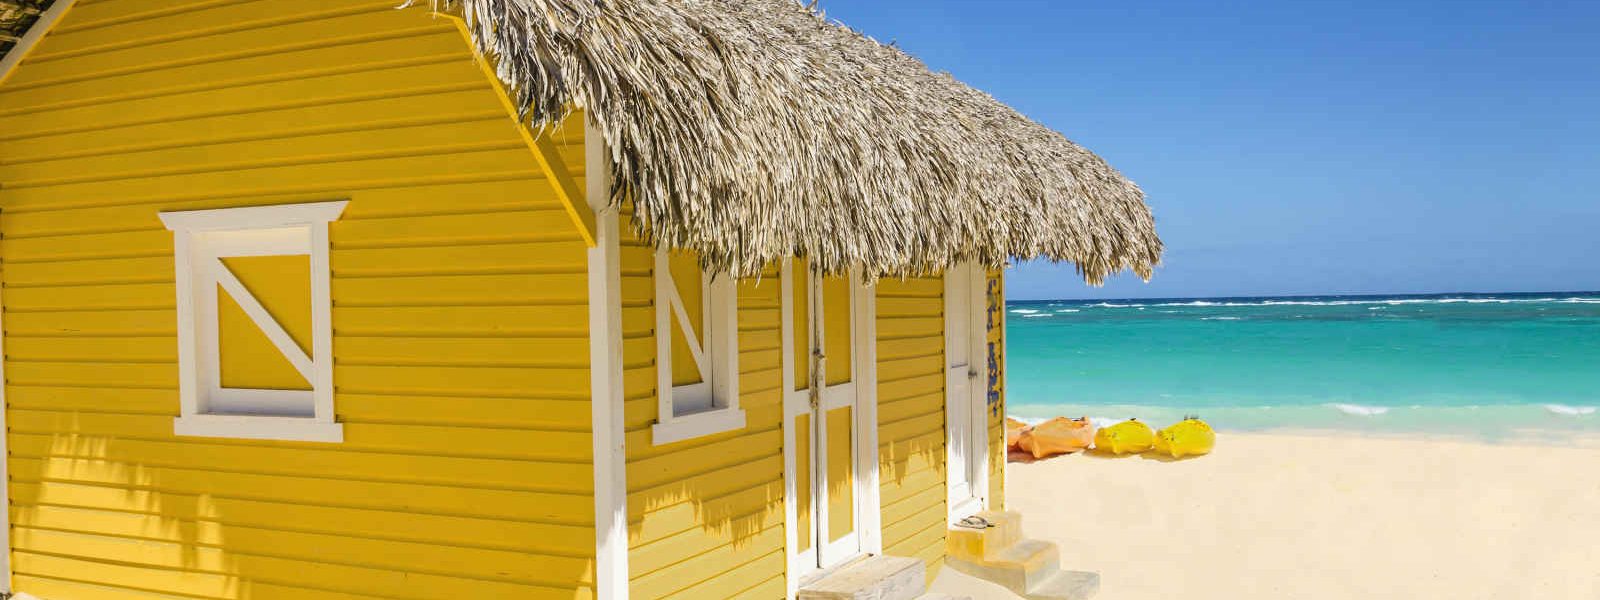 Bungalow jaune et toit de chaume ou paille sur la plage, Bahamas